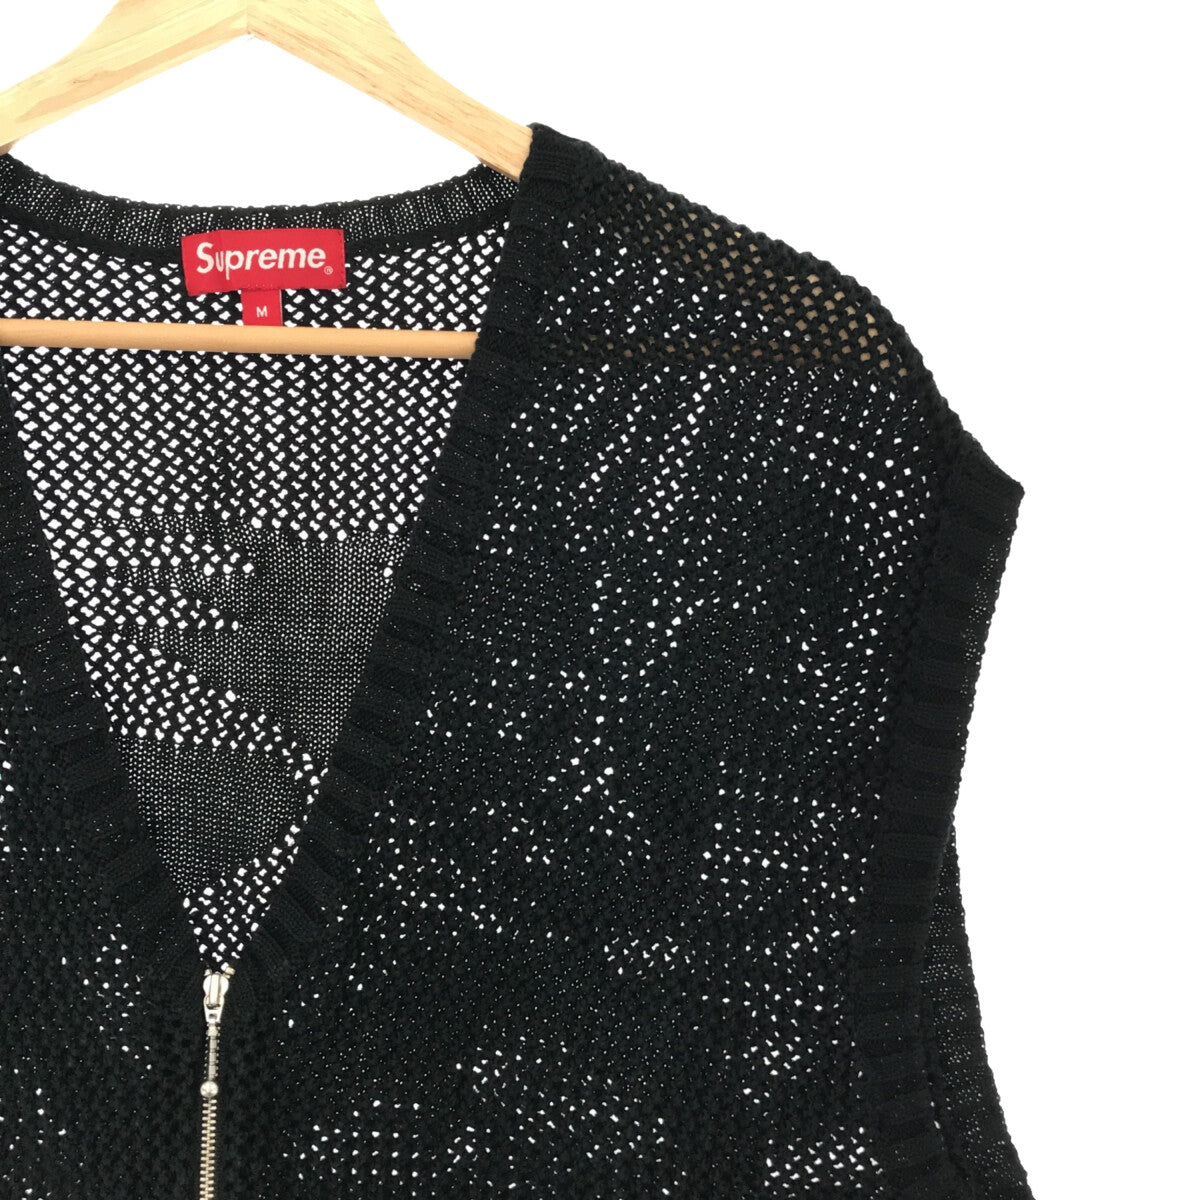 トップス【美品】  SUPREME / シュプリーム | 2023SS | Dragon Zip Up Sweater Vest  / ドラゴン ジップ アップ セーター ニットベスト | M | black | メンズ